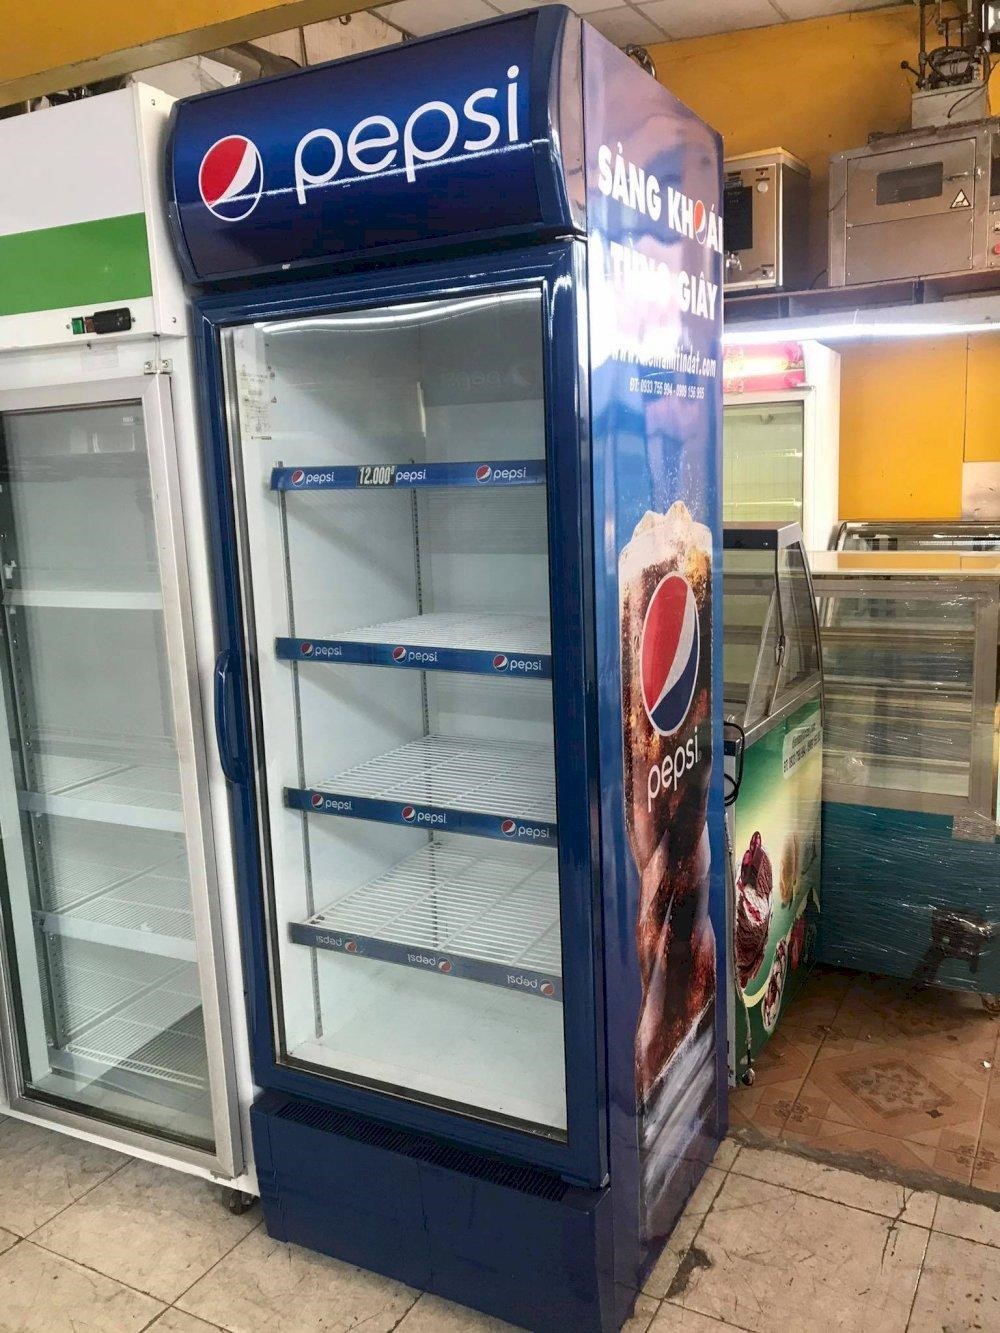 Mua Bán, Thanh Lý Tủ Mát Pepsi Cũ & Mới Chính Hãng Giá Rẻ